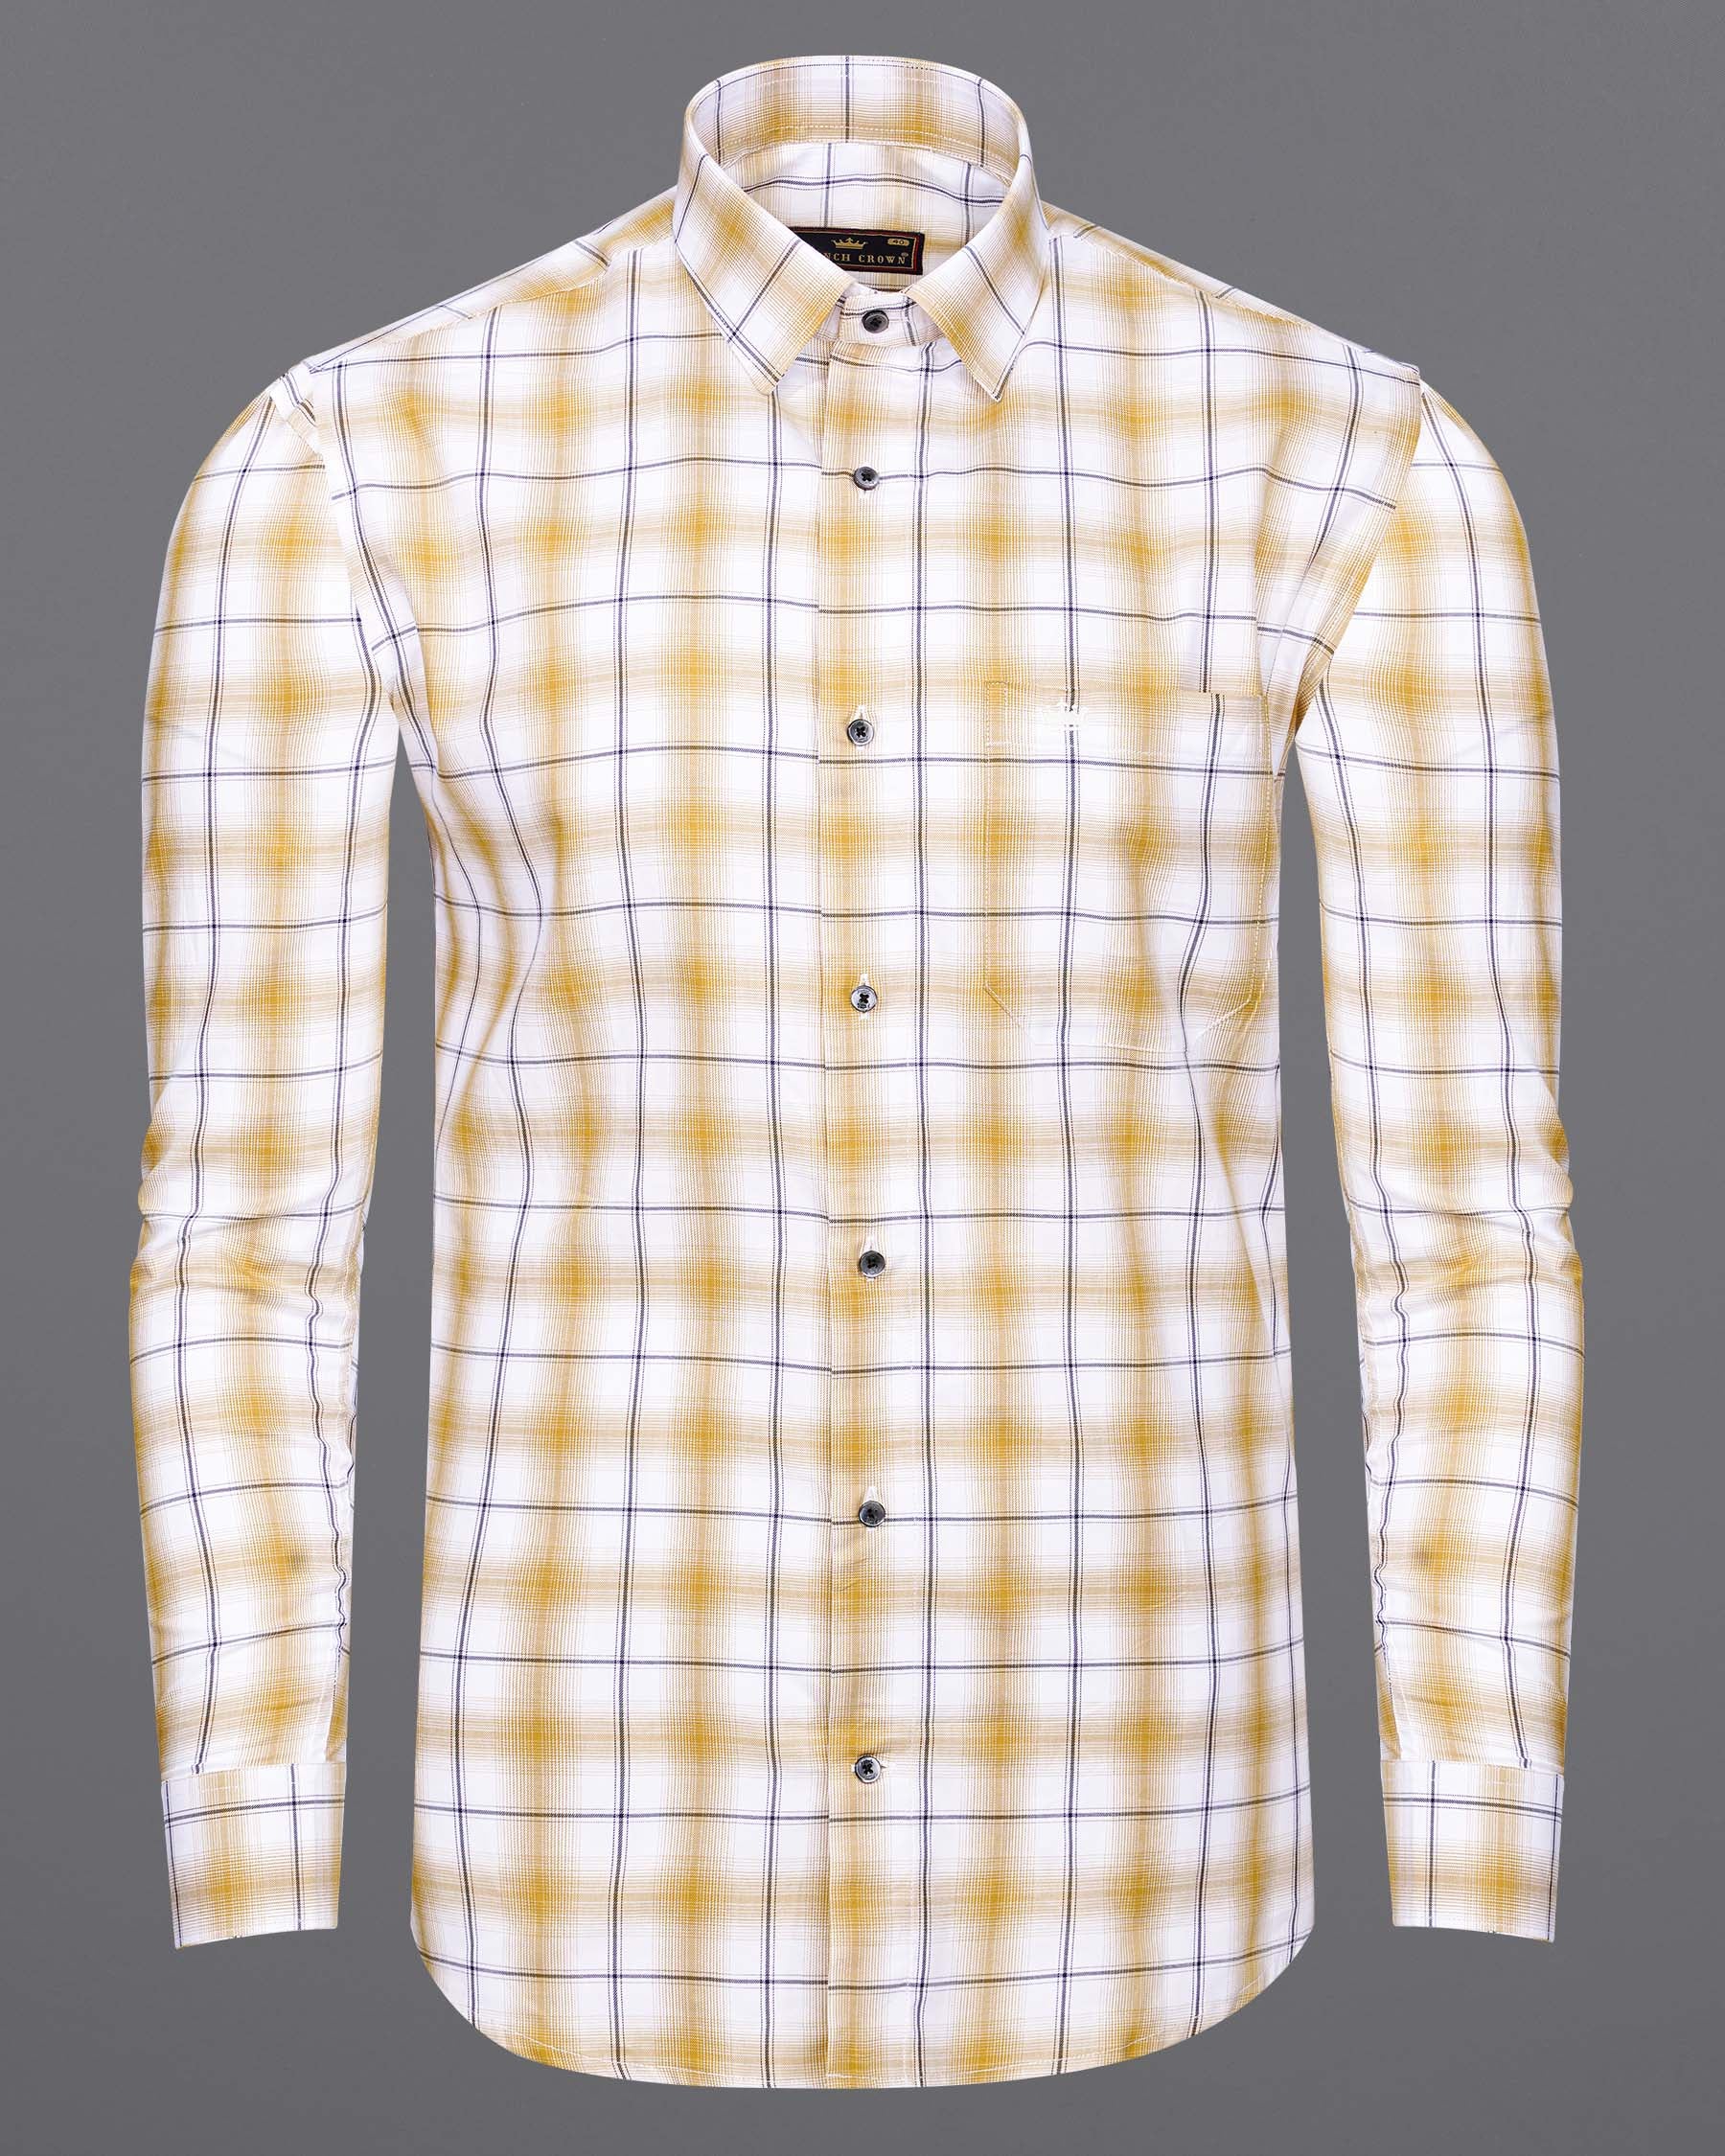 Desert Brown and White Twill Windowpane Premium Cotton Shirt